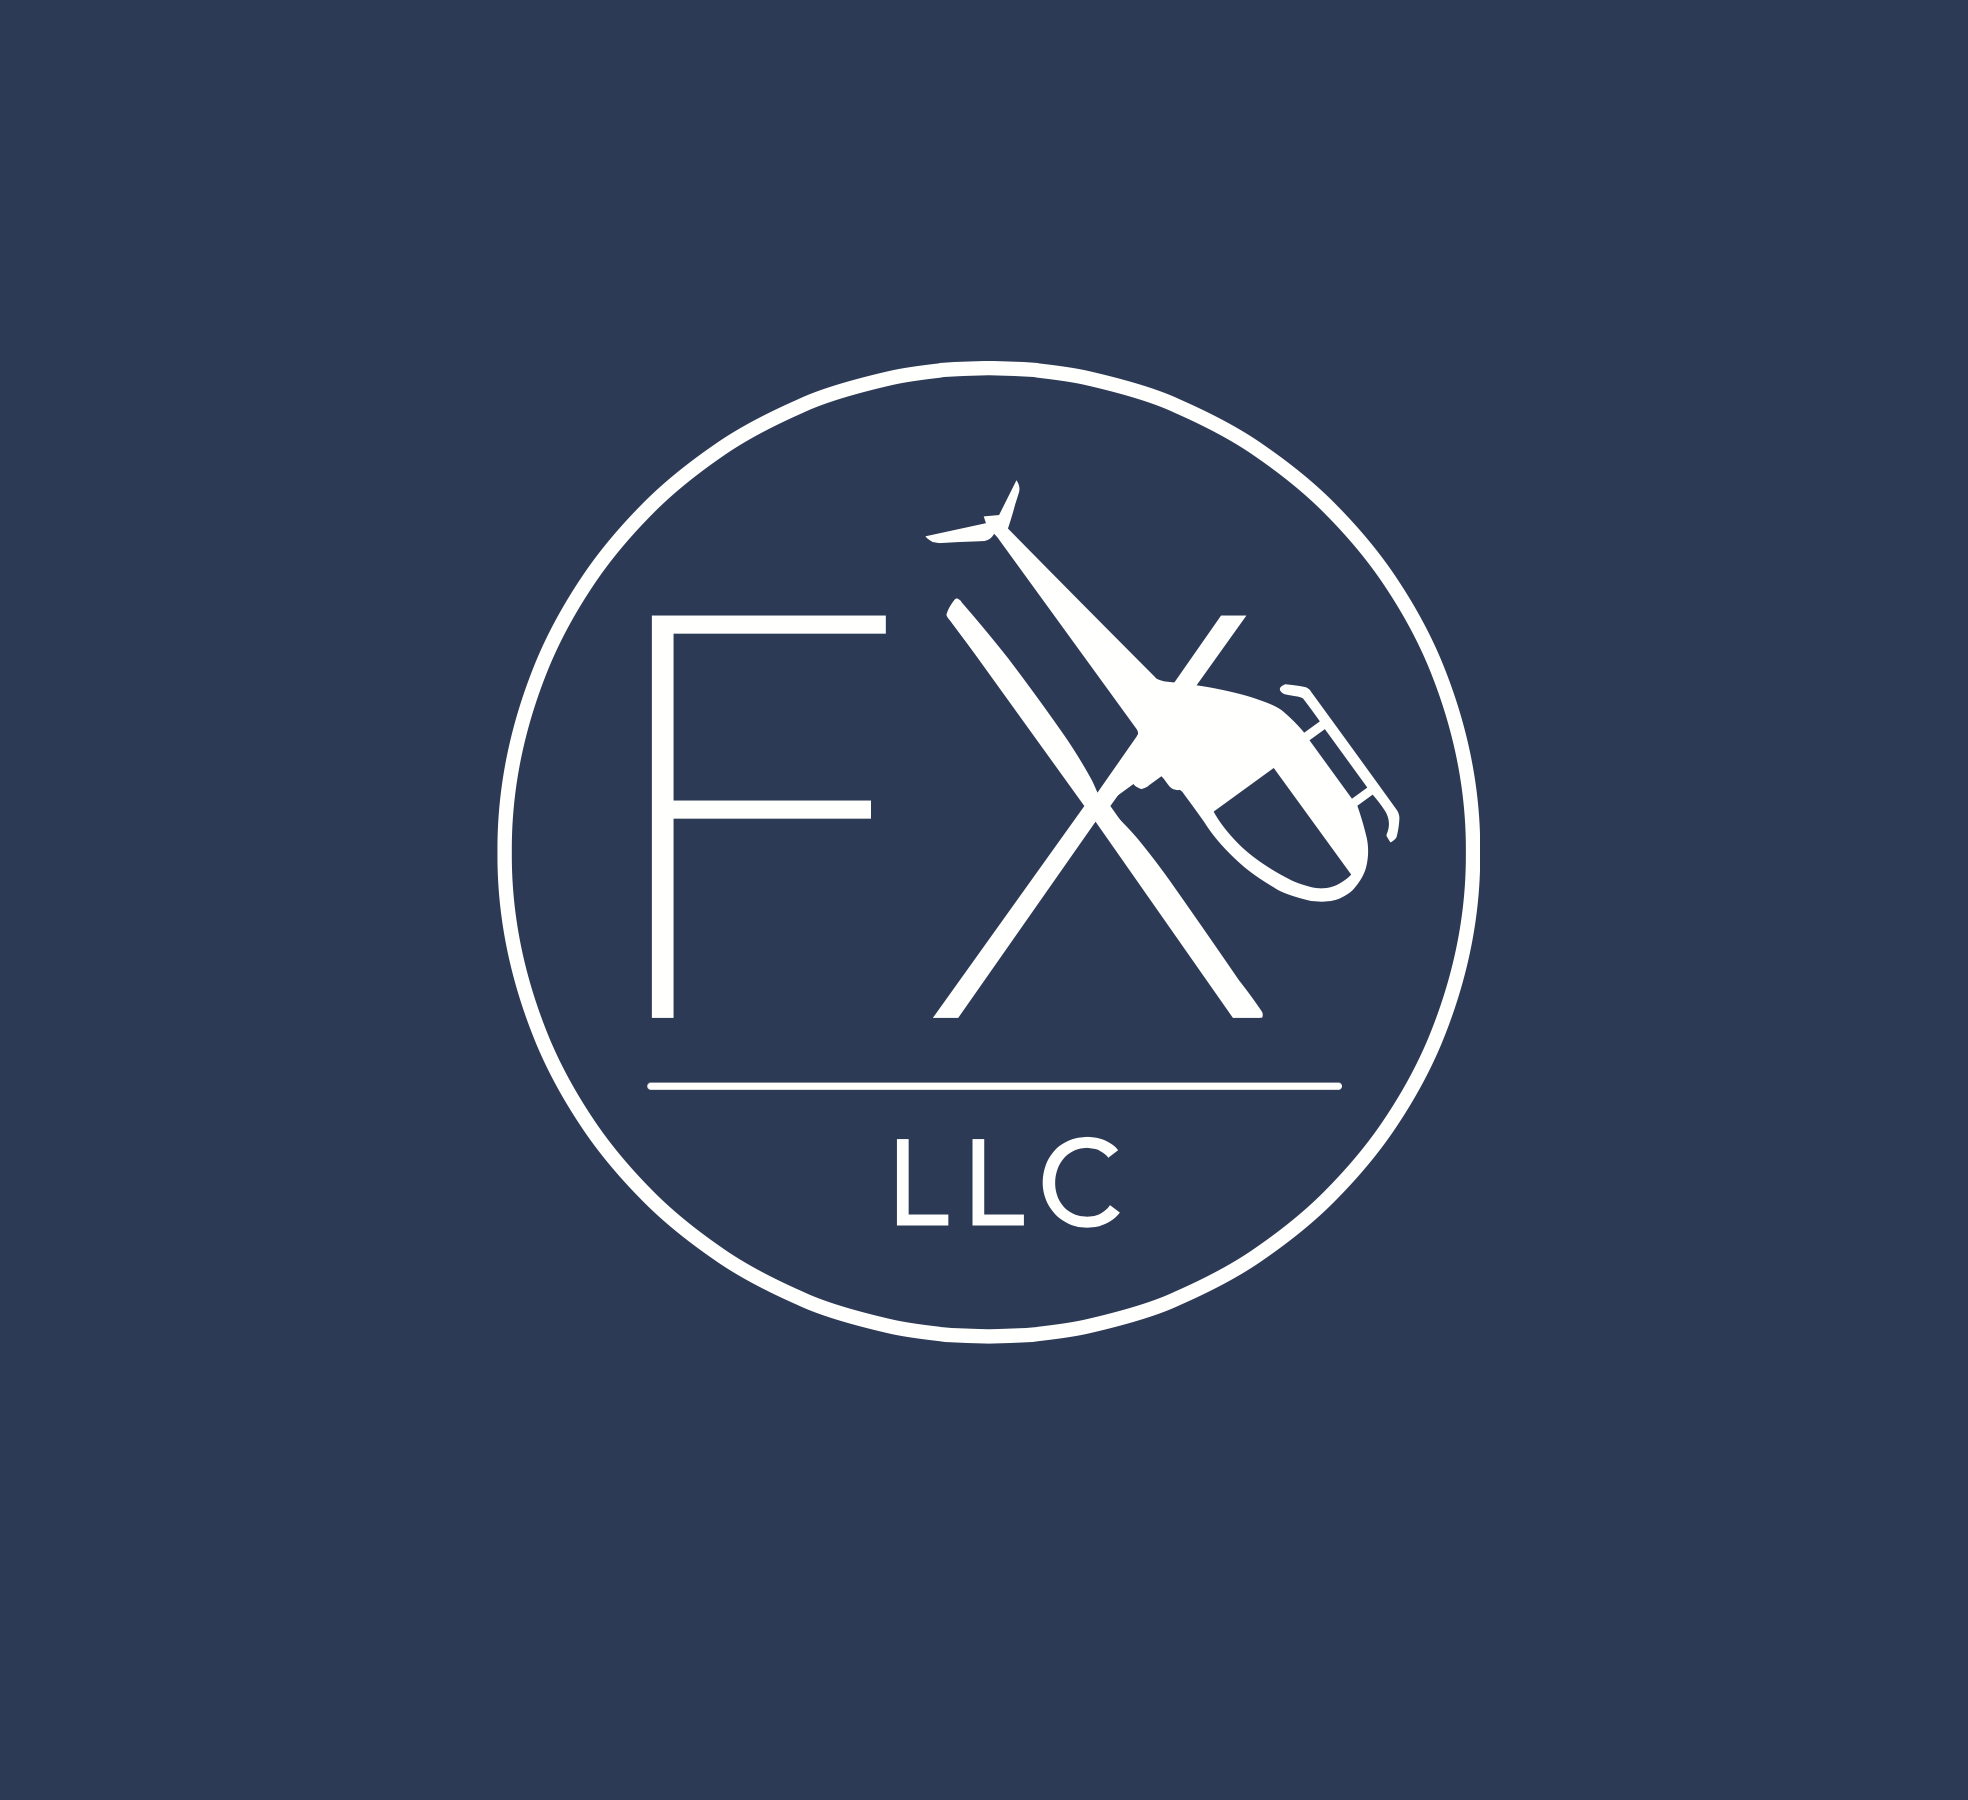 FX LLC Branding